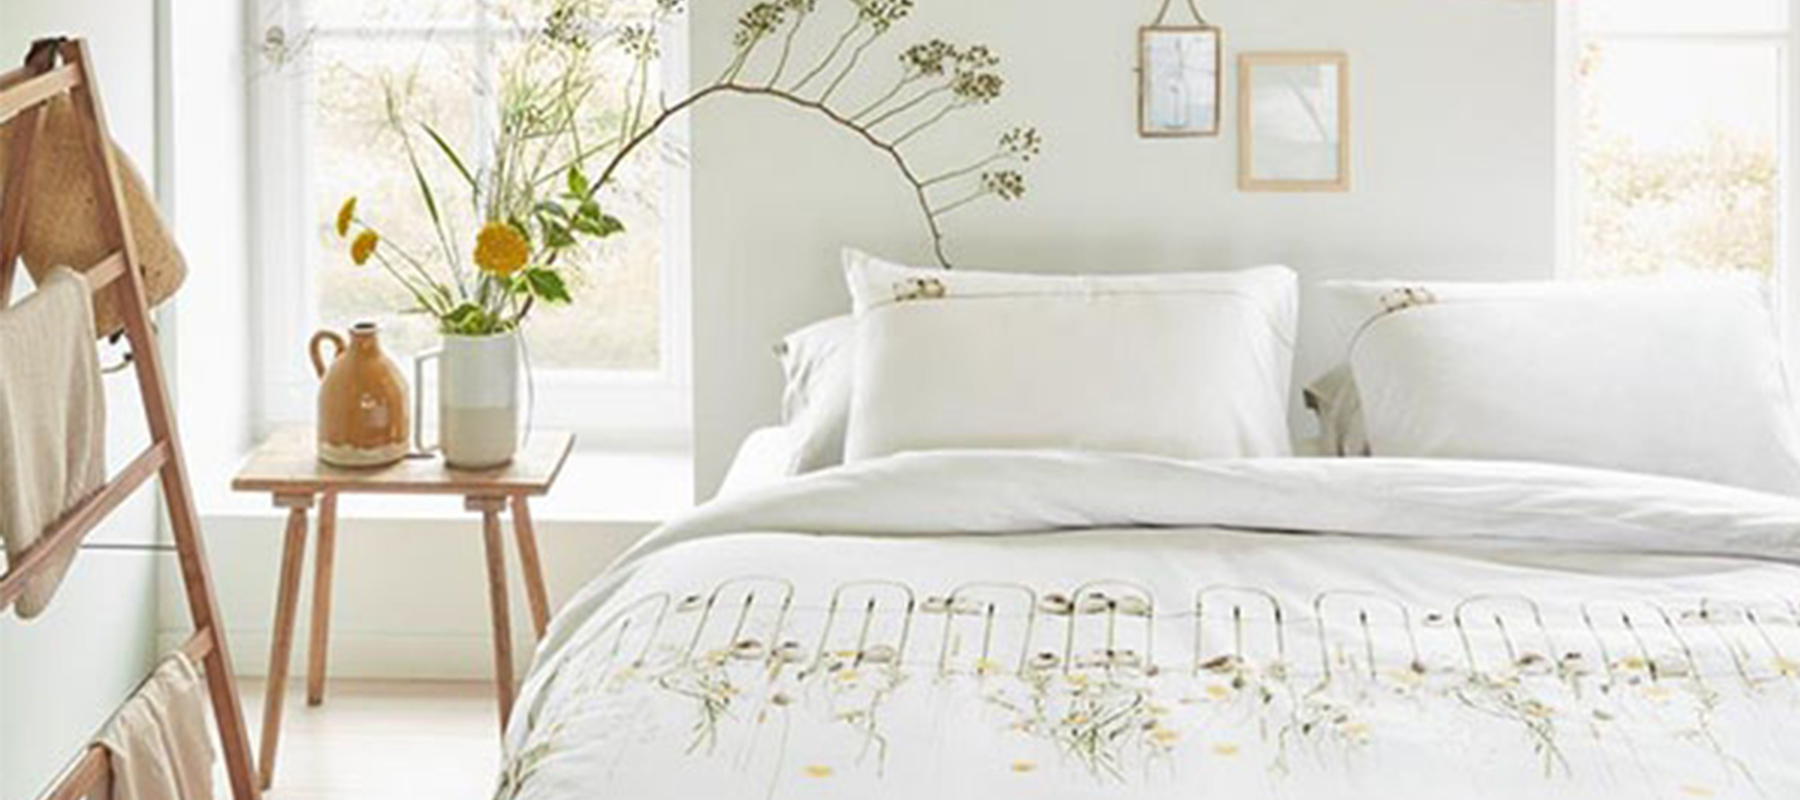 Blog zo maak je jouw slaapkamer zomerklaar - fris dekbedovertrek Marjolein Bastin